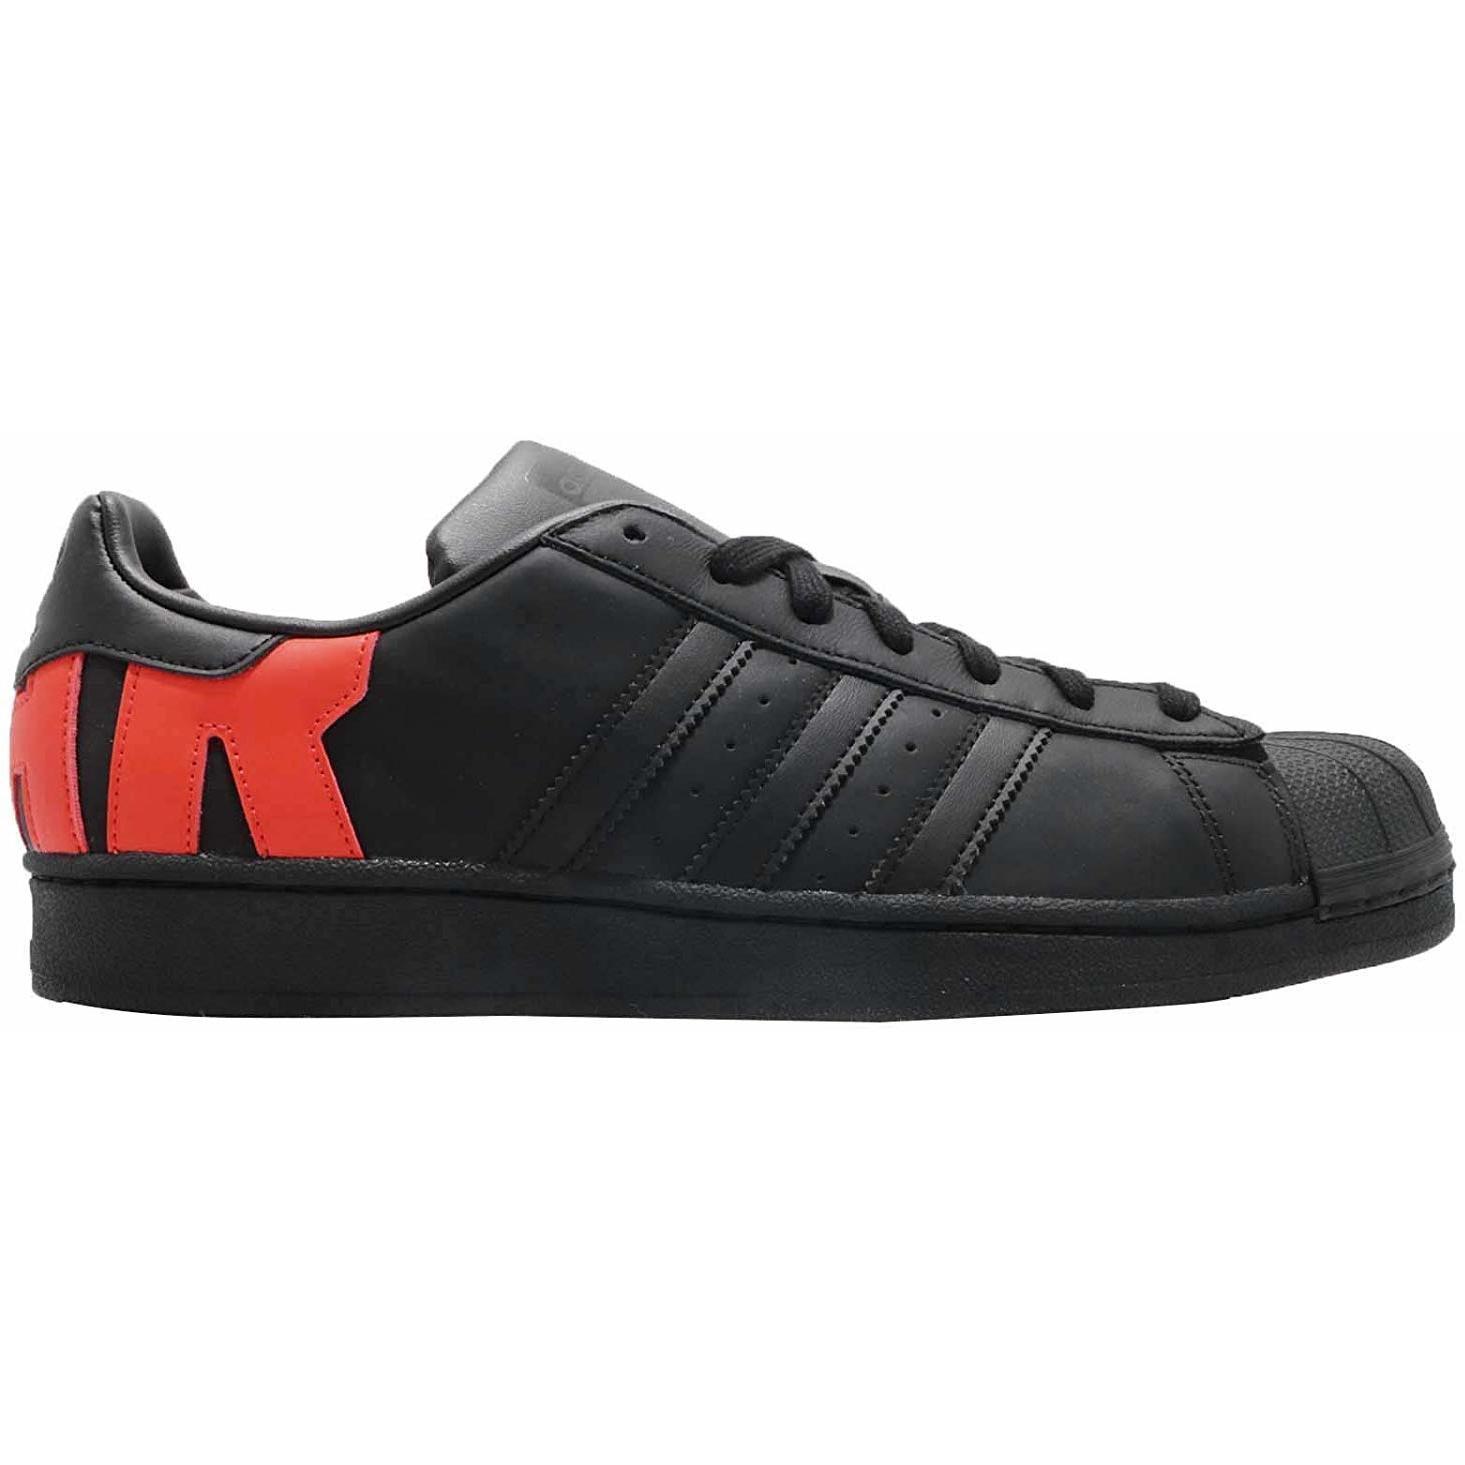 marker Roar Humane Pantofi sport, Adidasi barbati adidas Originals Superstar B37981